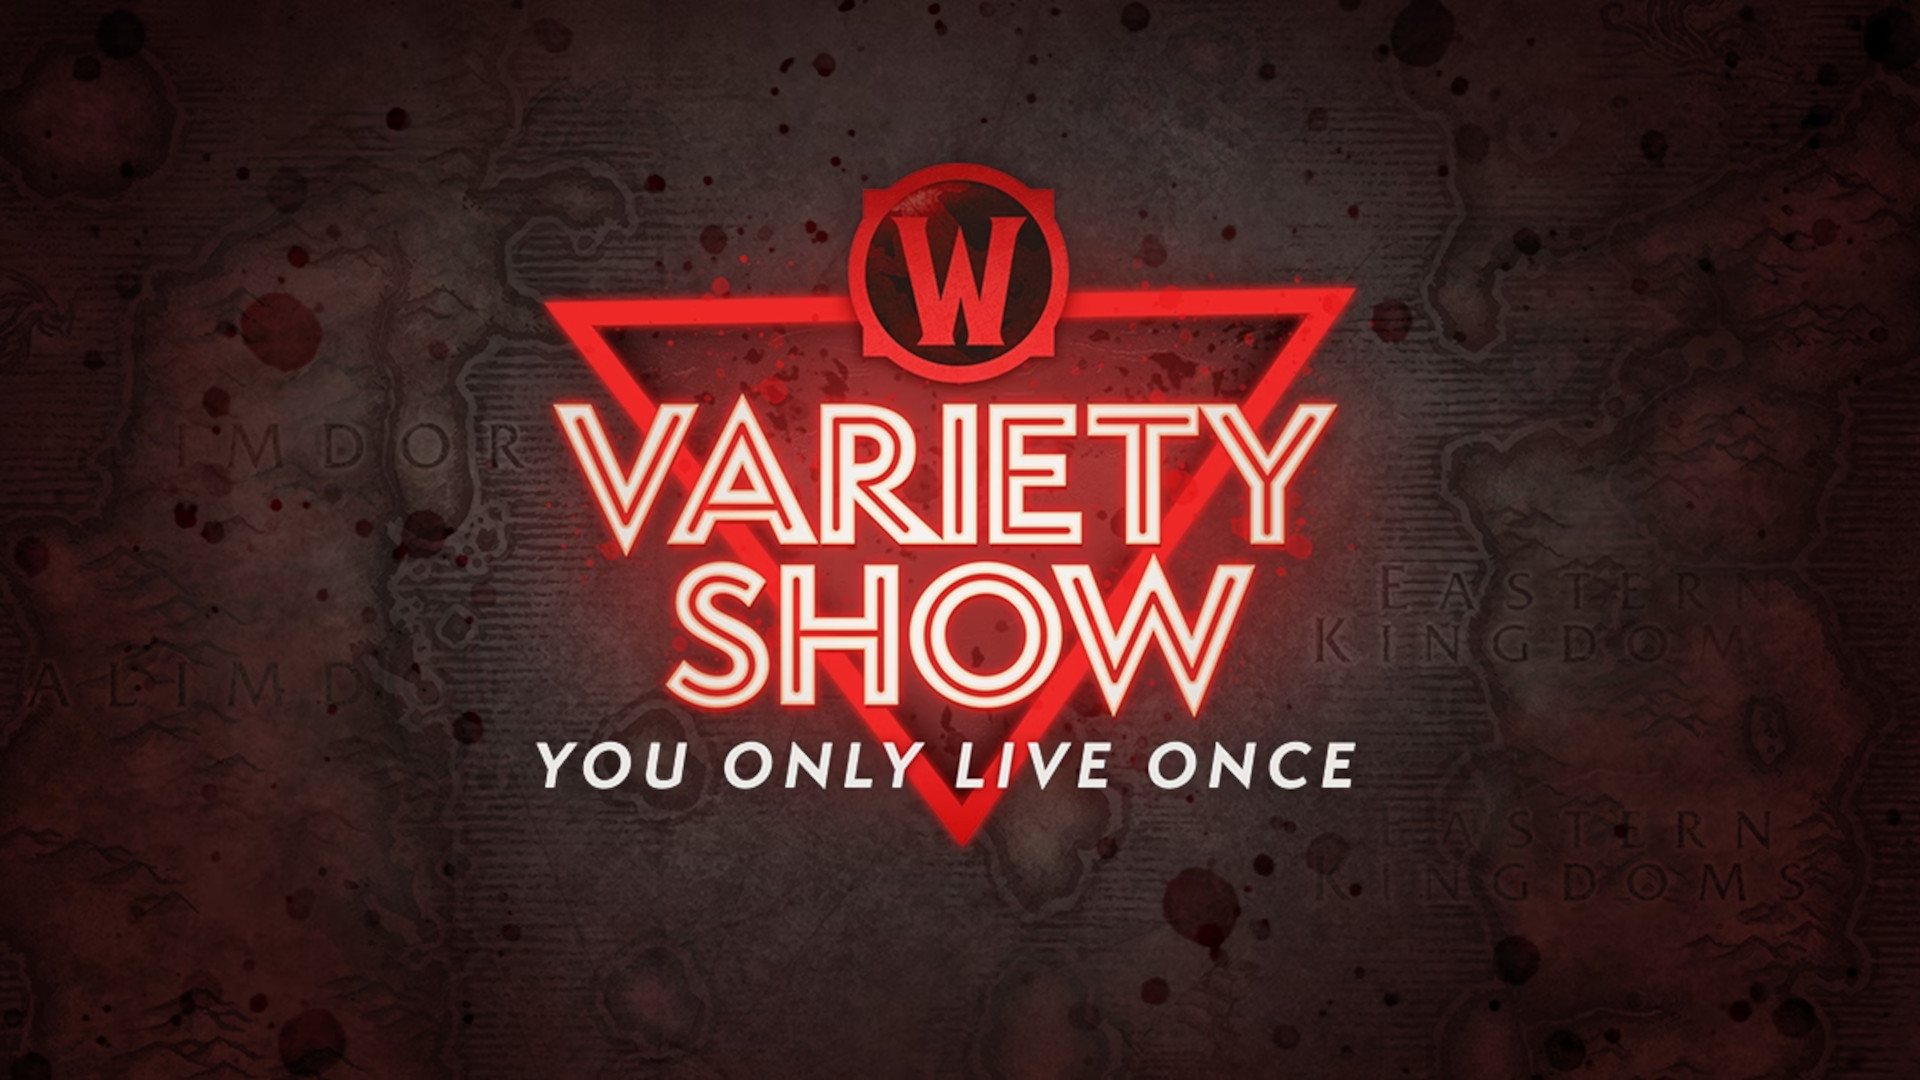 Diese Woche in WoW: Variety Show und mehr